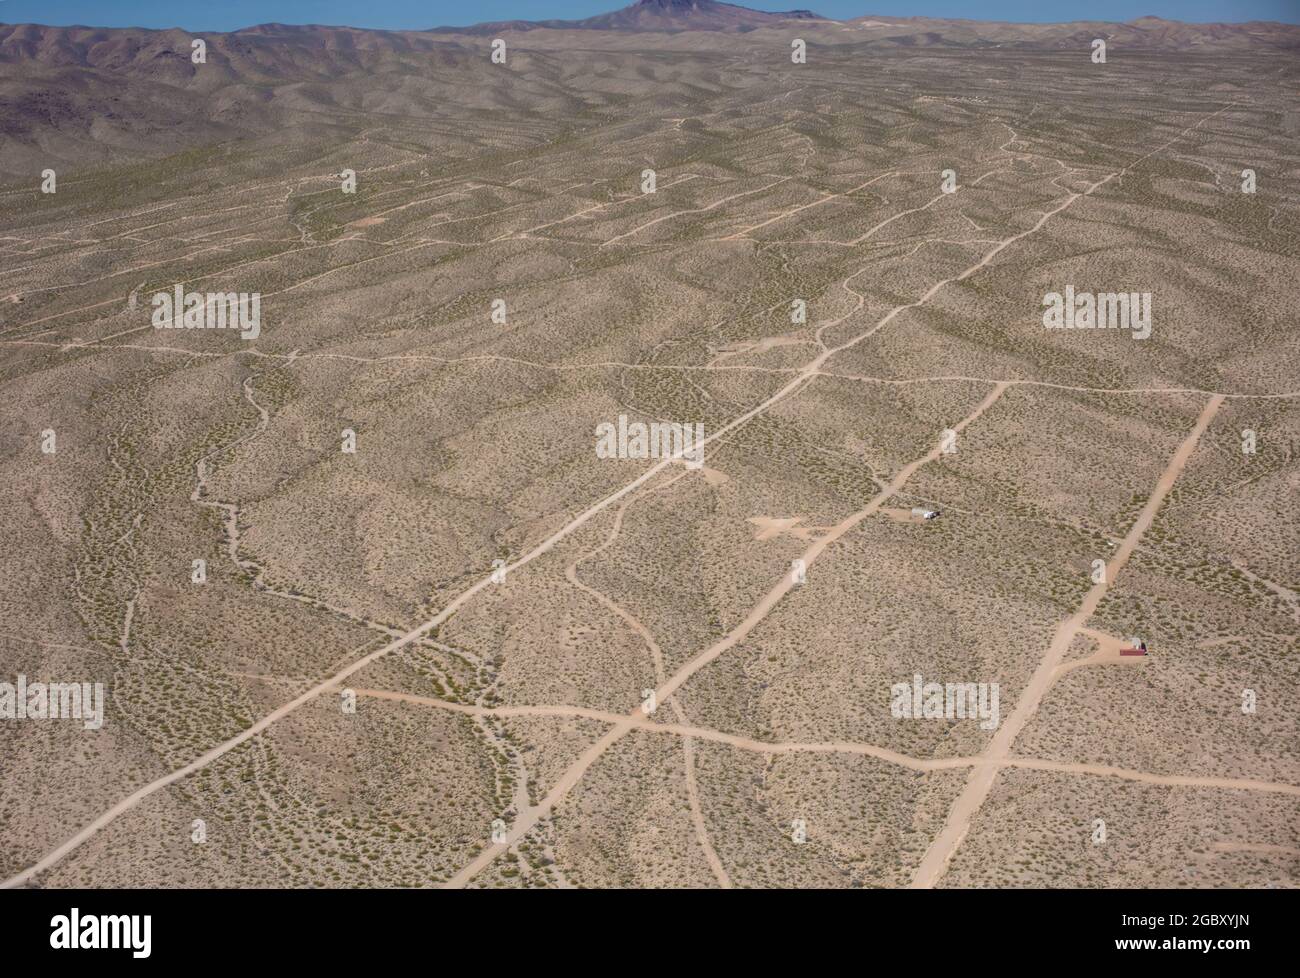 Les routes de terre en configuration de ligne de réseau marquent une proposition de nouvelle colonie dans le désert près de Las Vegas, Nevada, USA avec peu de preneurs Banque D'Images